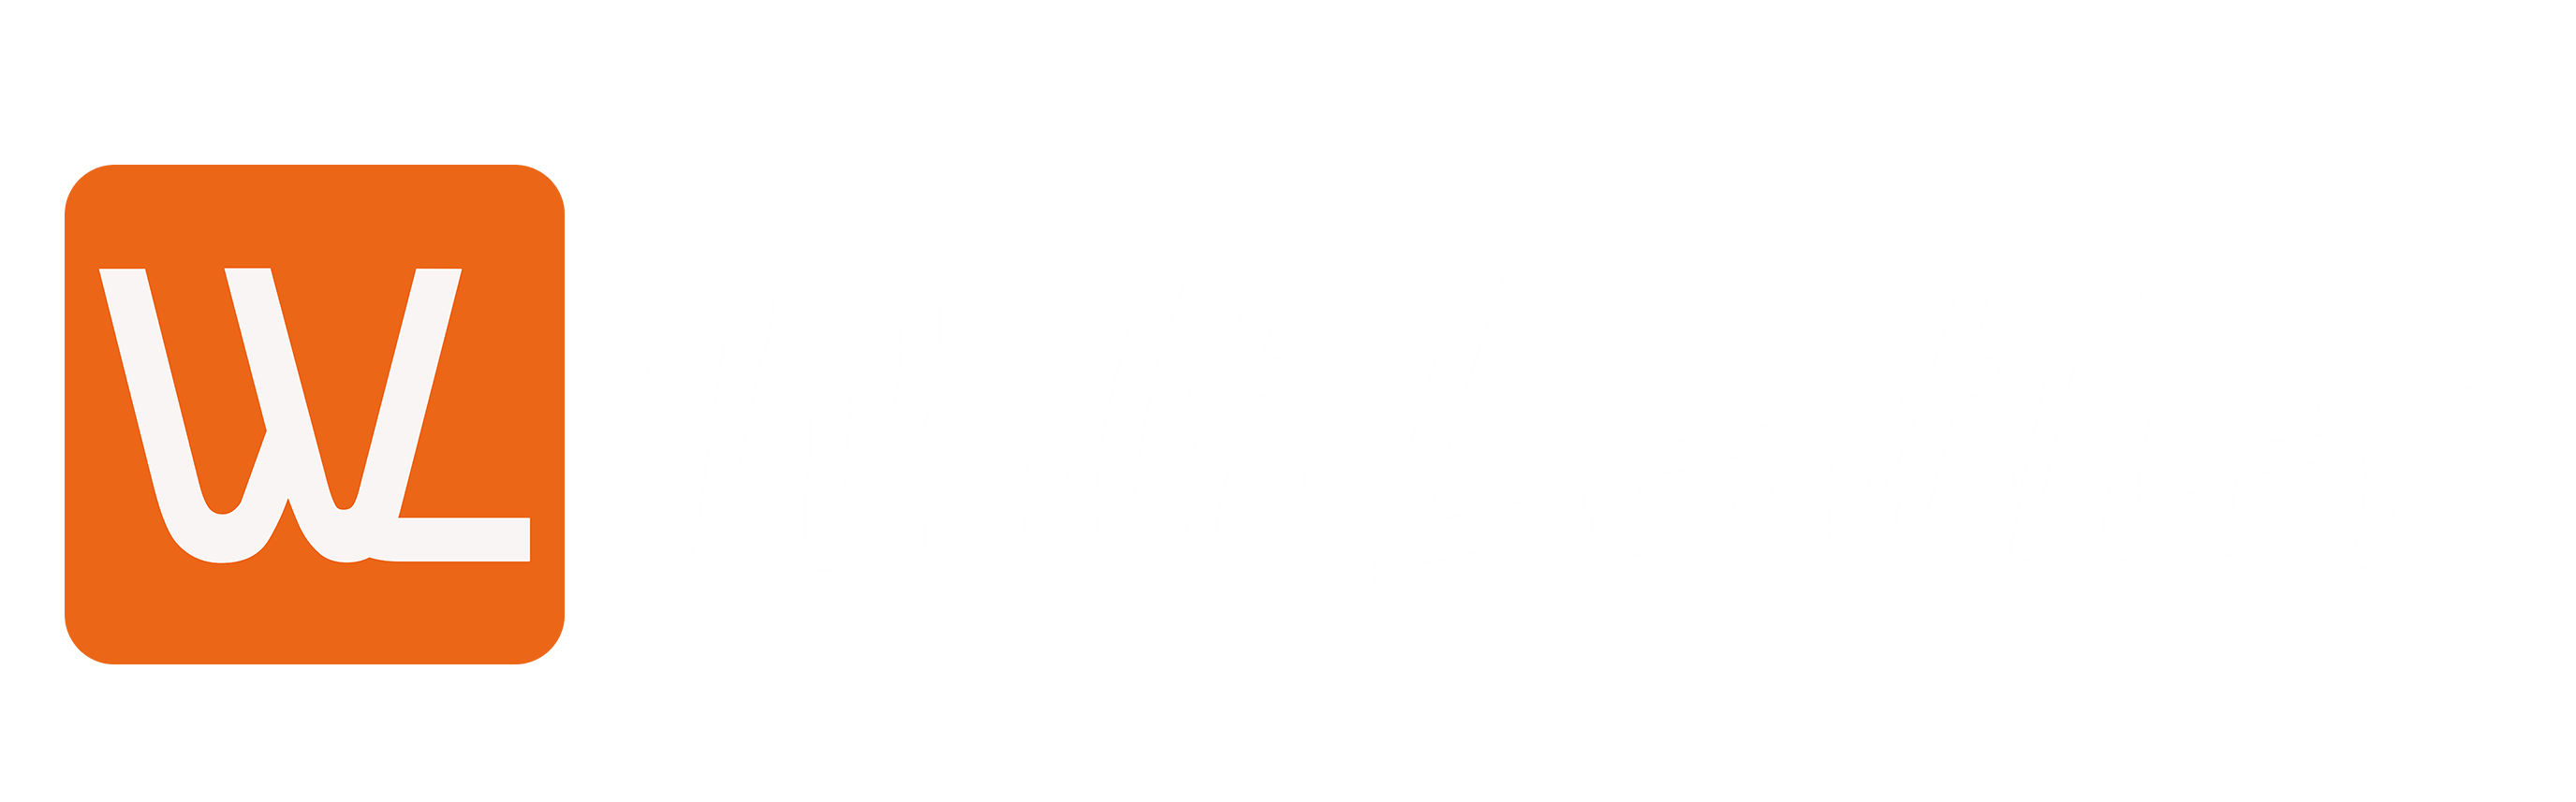 Waltleather